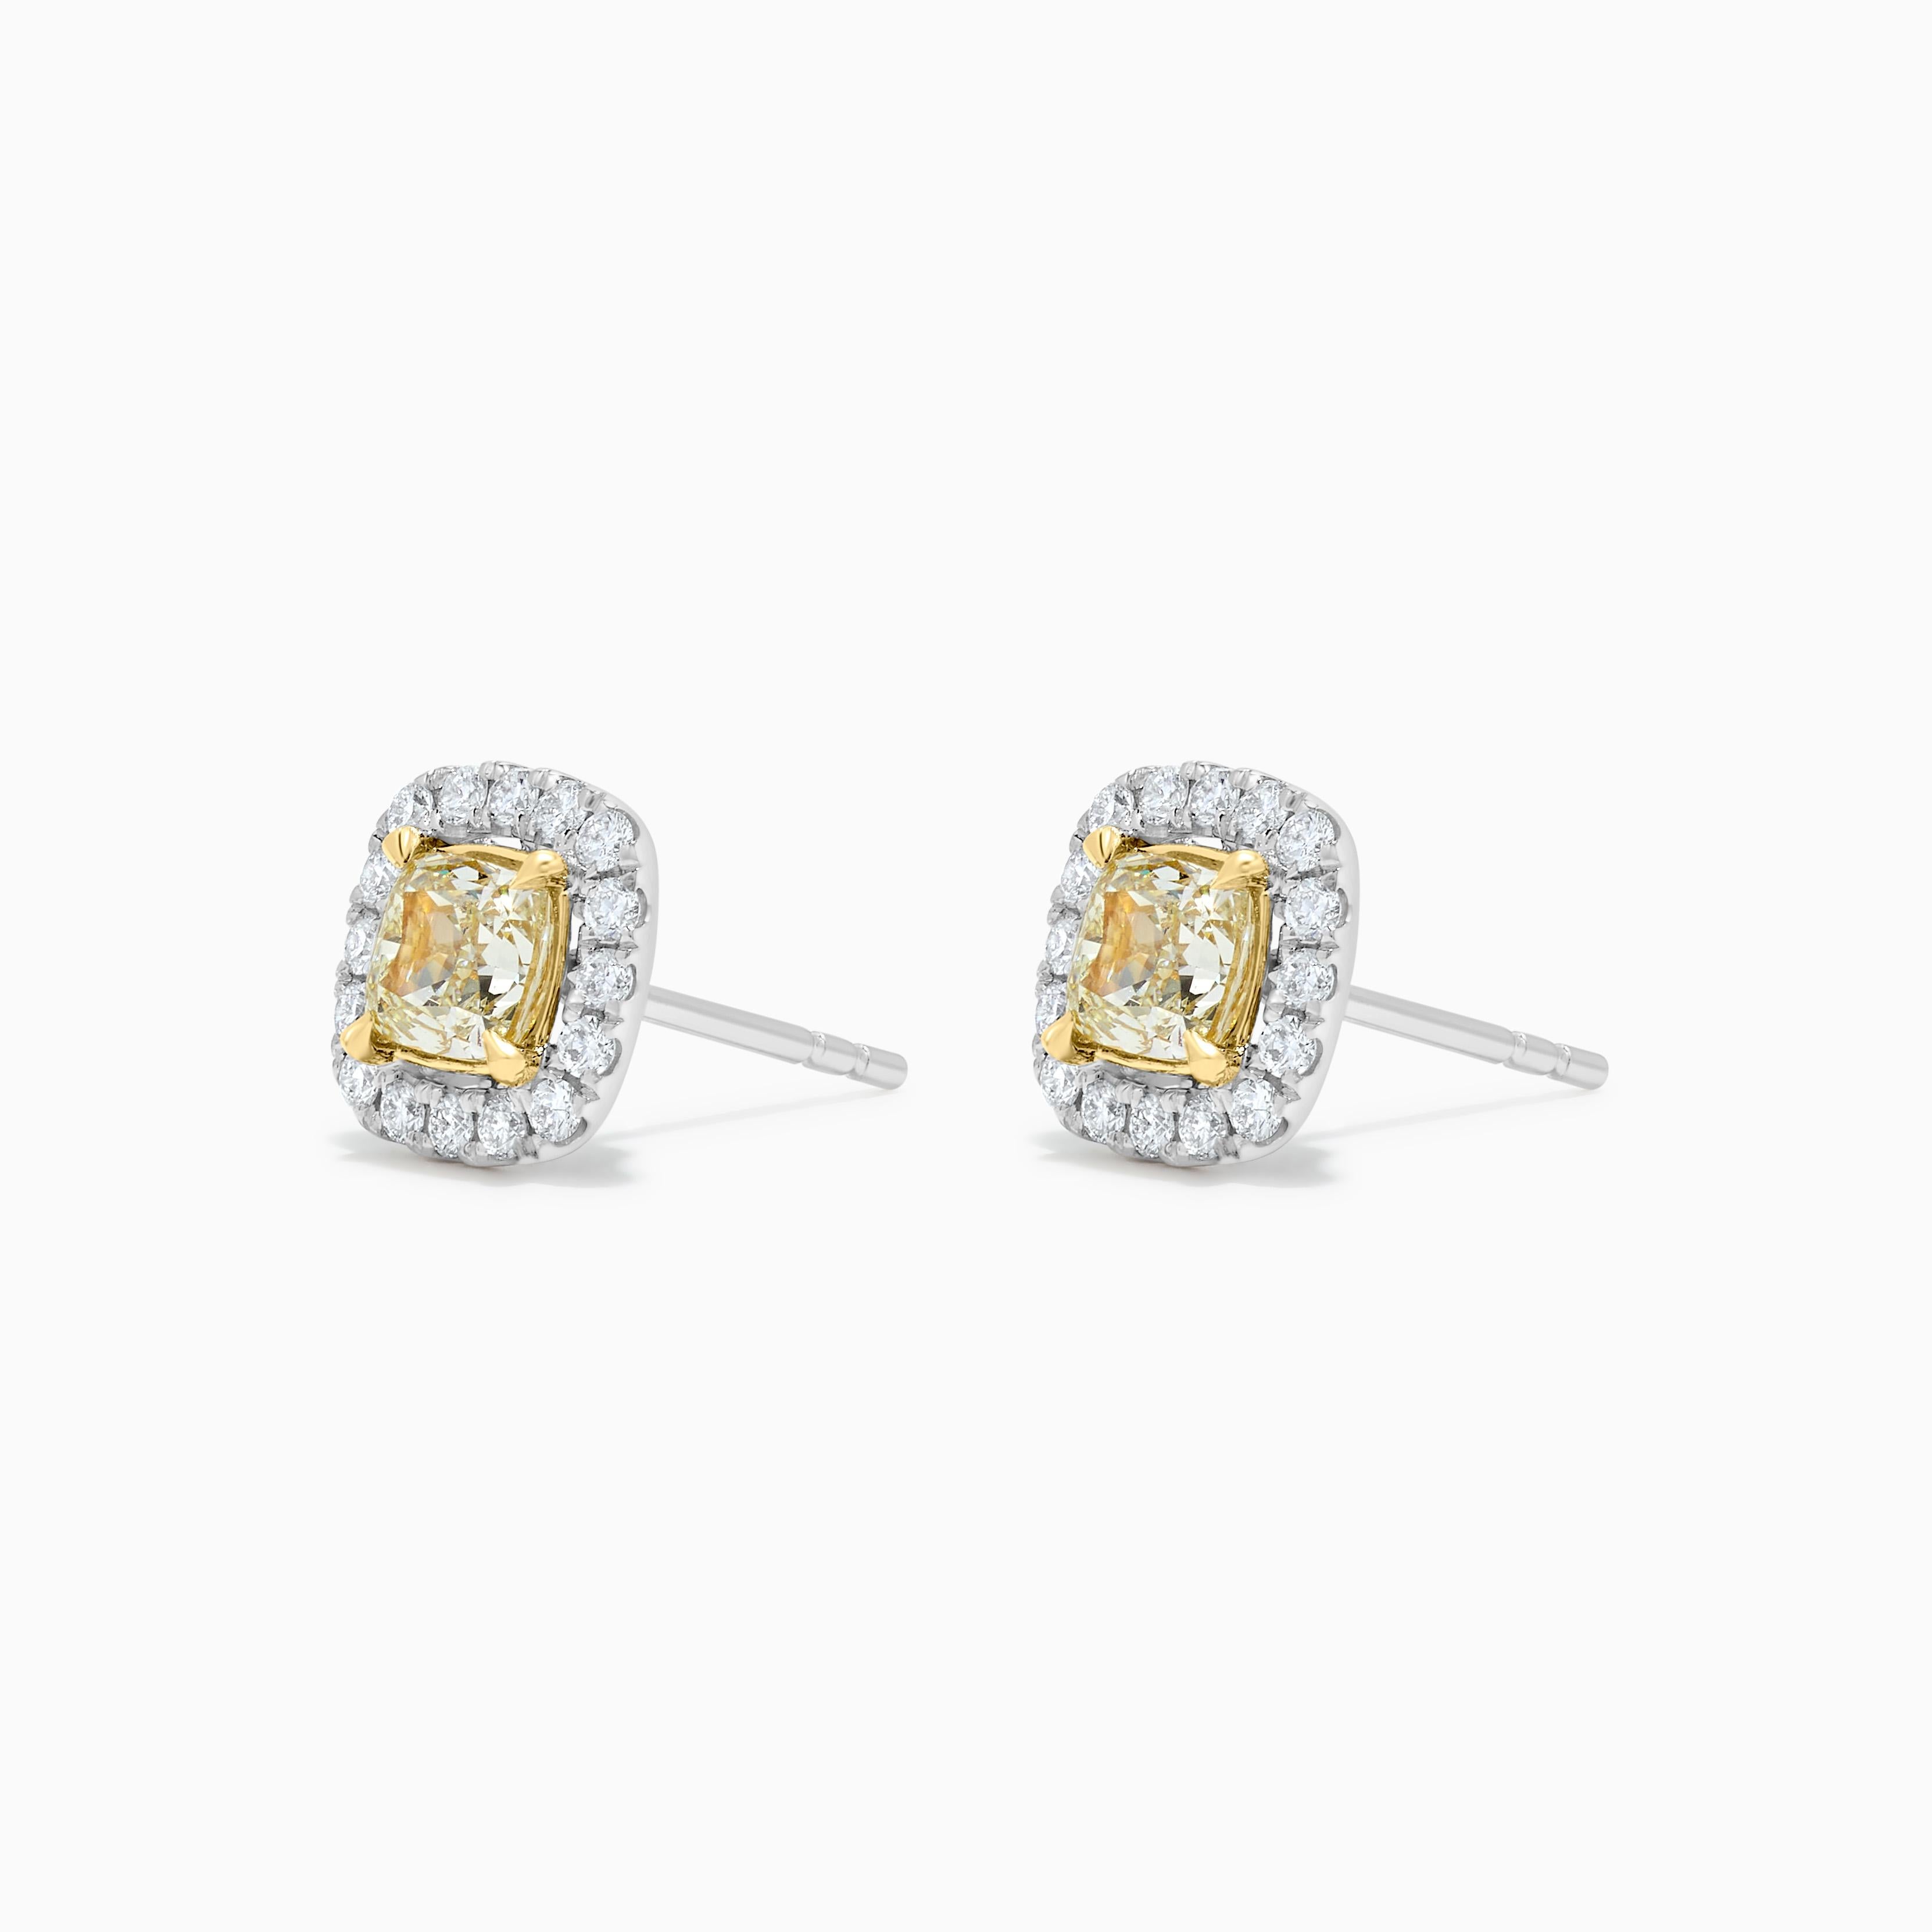 Les boucles d'oreilles classiques en diamant de Raregemworld. Monté dans une belle monture en or jaune et blanc 18 carats avec des diamants jaunes naturels de taille coussin. Les diamants jaunes sont entourés d'une mêlée de diamants blancs ronds